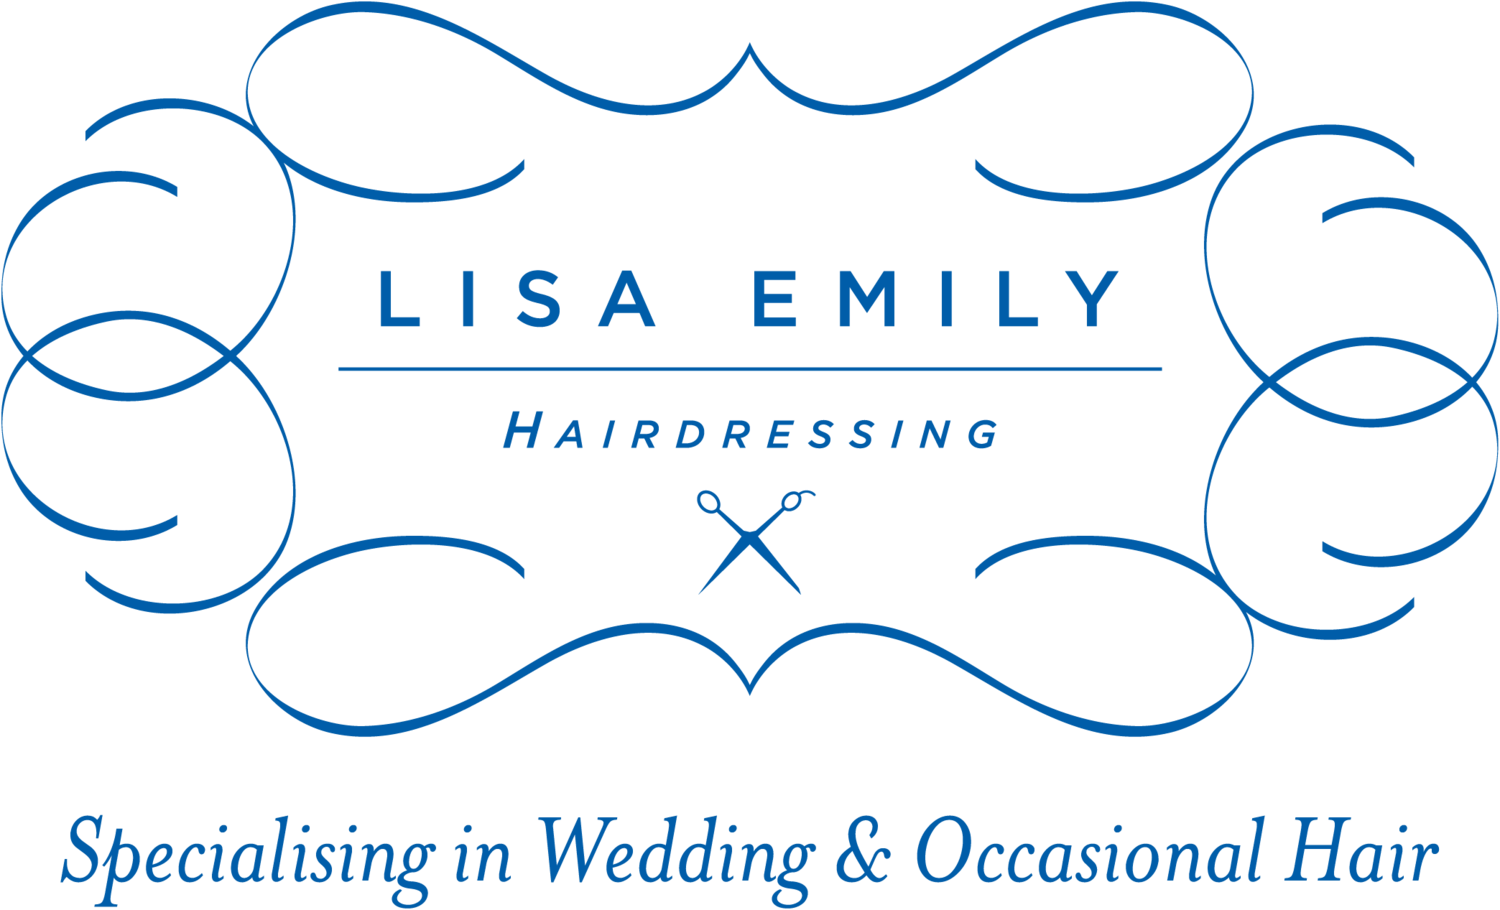 Lisa Emily Hairdressing